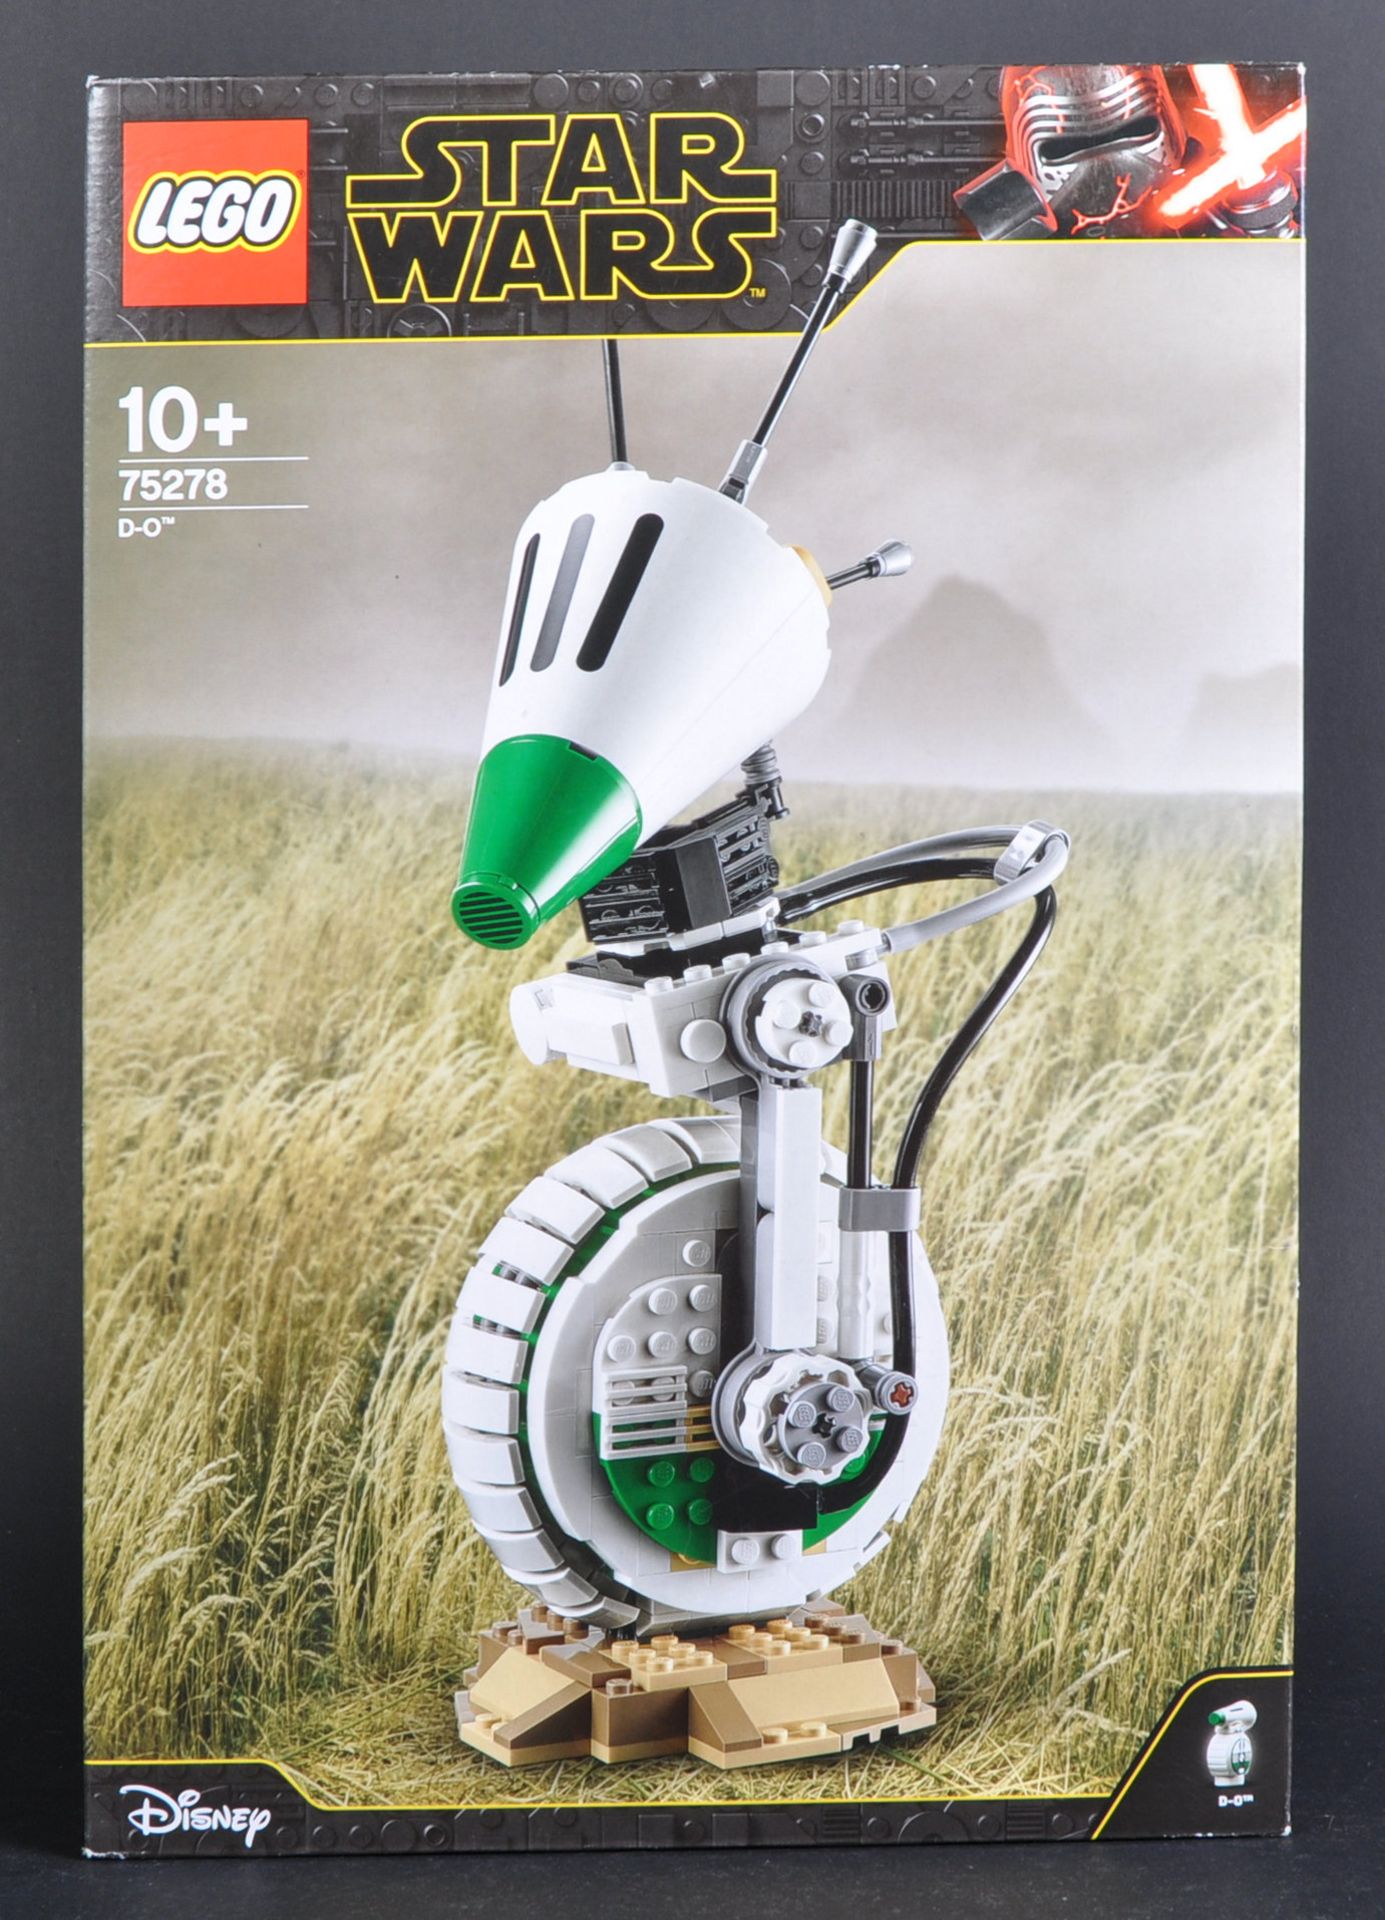 LEGO SET - STAR WARS - 75278 - D-O